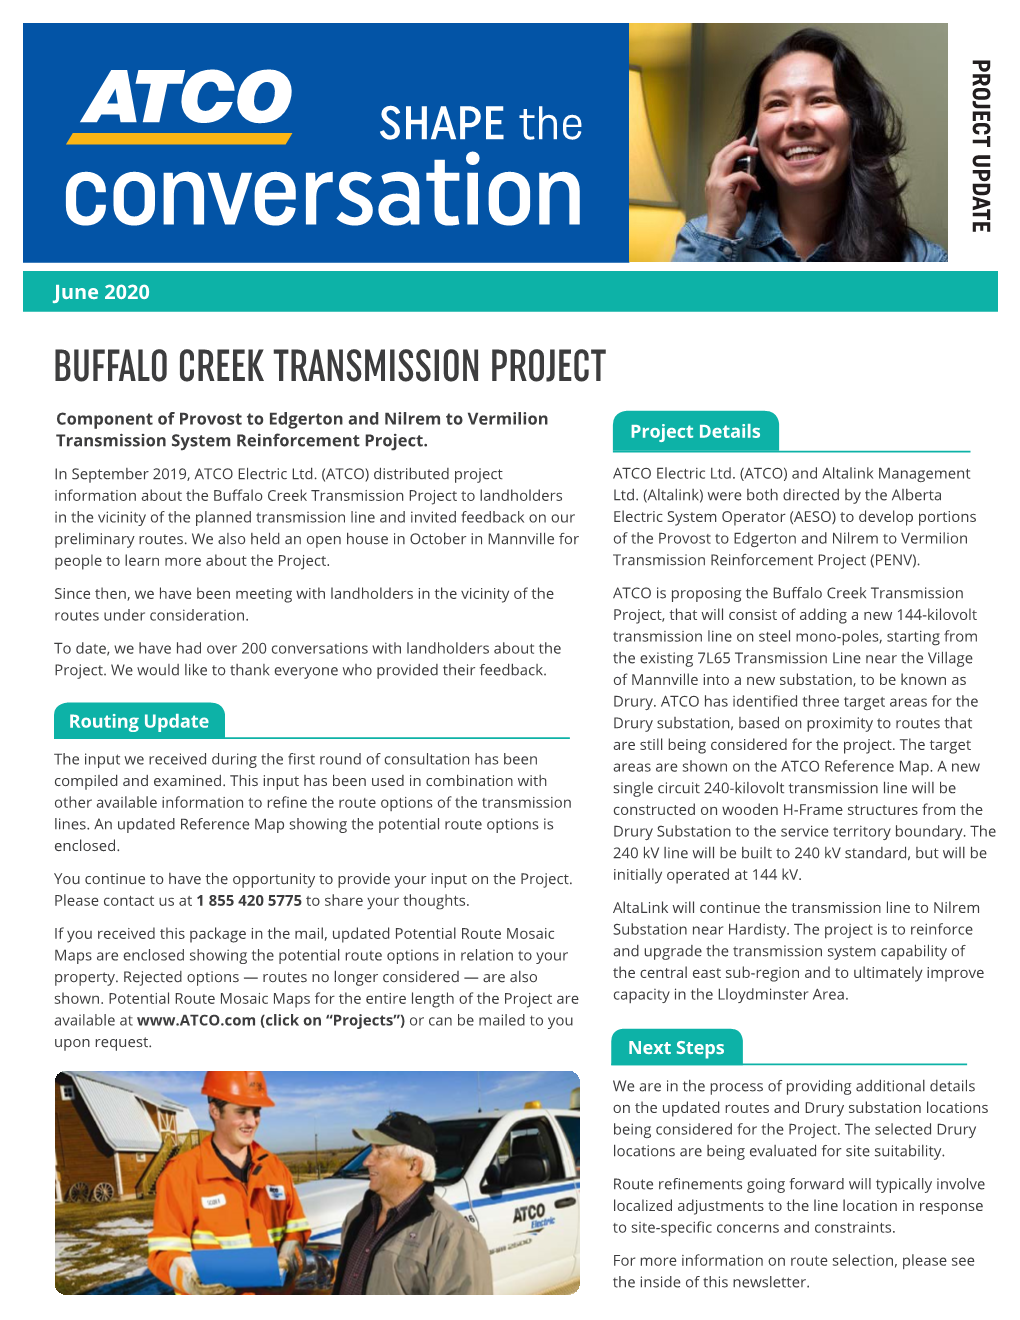 Buffalo Creek Transmission Project